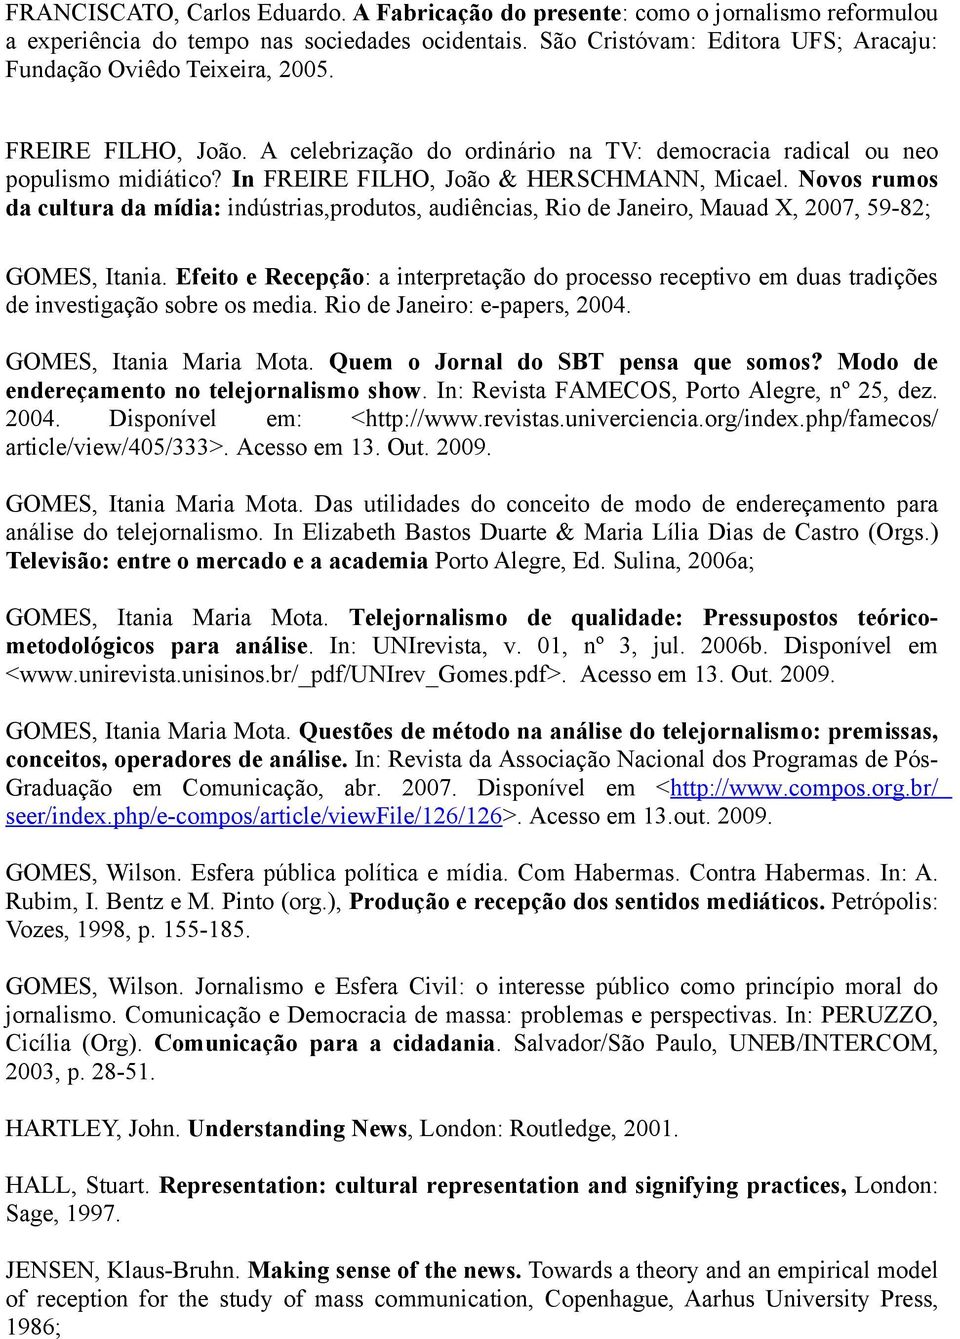 In FREIRE FILHO, João & HERSCHMANN, Micael. Novos rumos da cultura da mídia: indústrias,produtos, audiências, Rio de Janeiro, Mauad X, 2007, 59-82; GOMES, Itania.